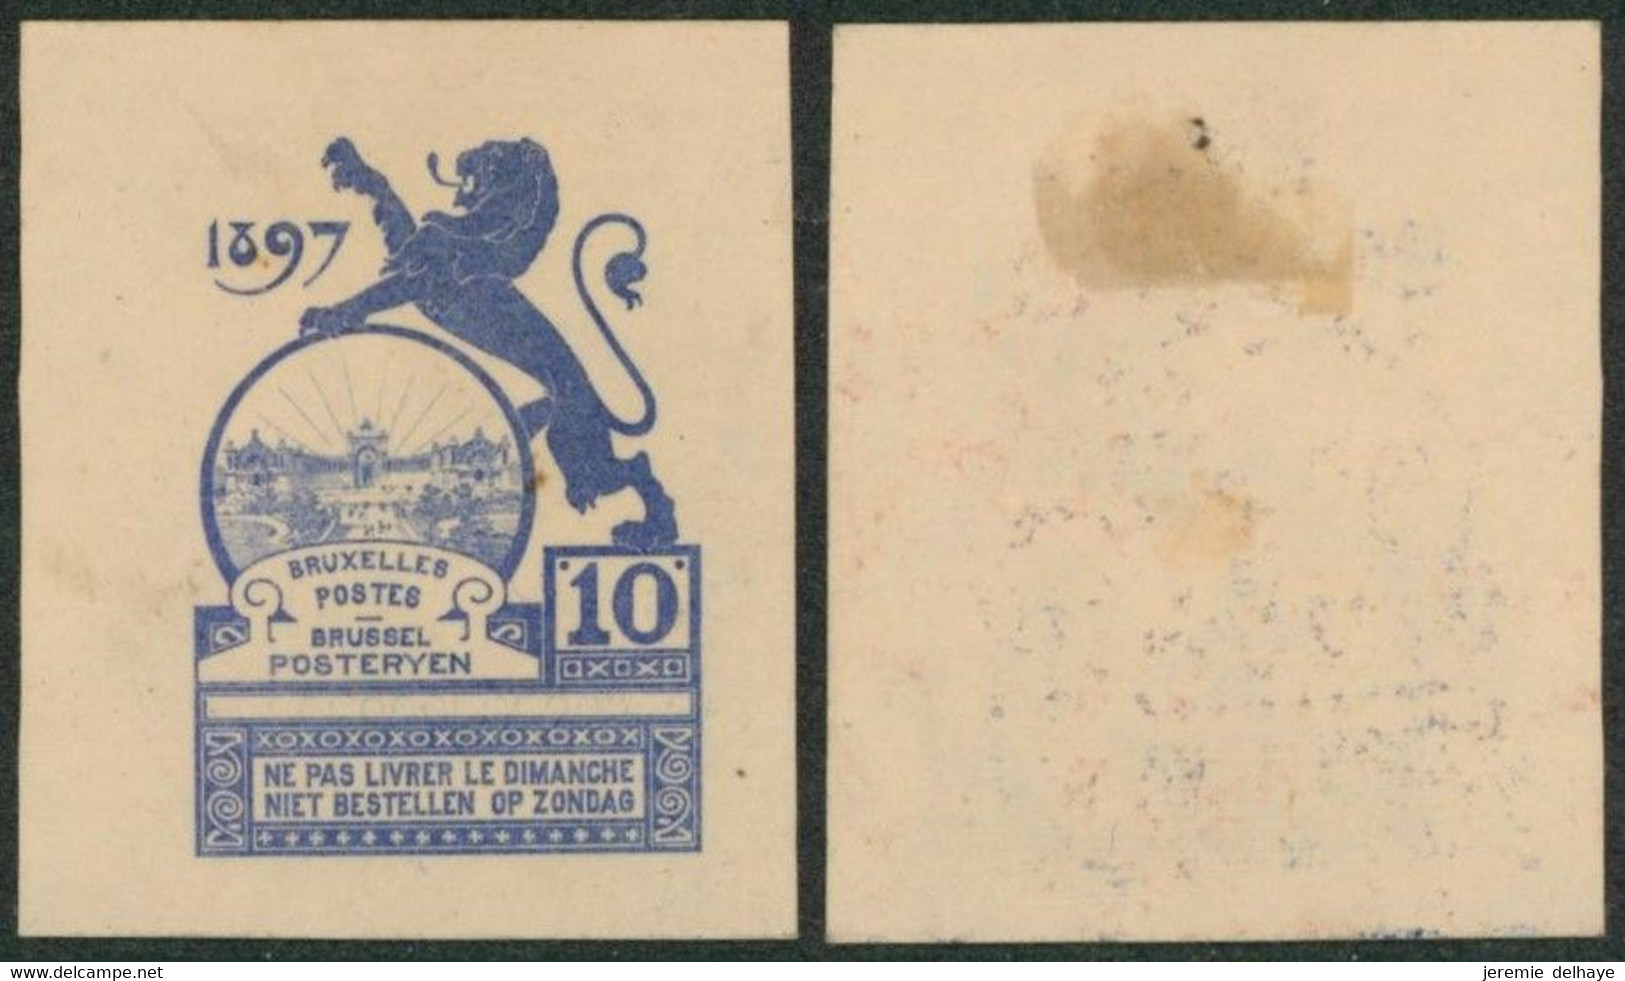 Essai - Proposition Du Peintre Louis Titz (Bruxelles Expositions 1897) Sur Papier Japon épais (1 Couleur) : STES 2223 - Essais & Réimpressions